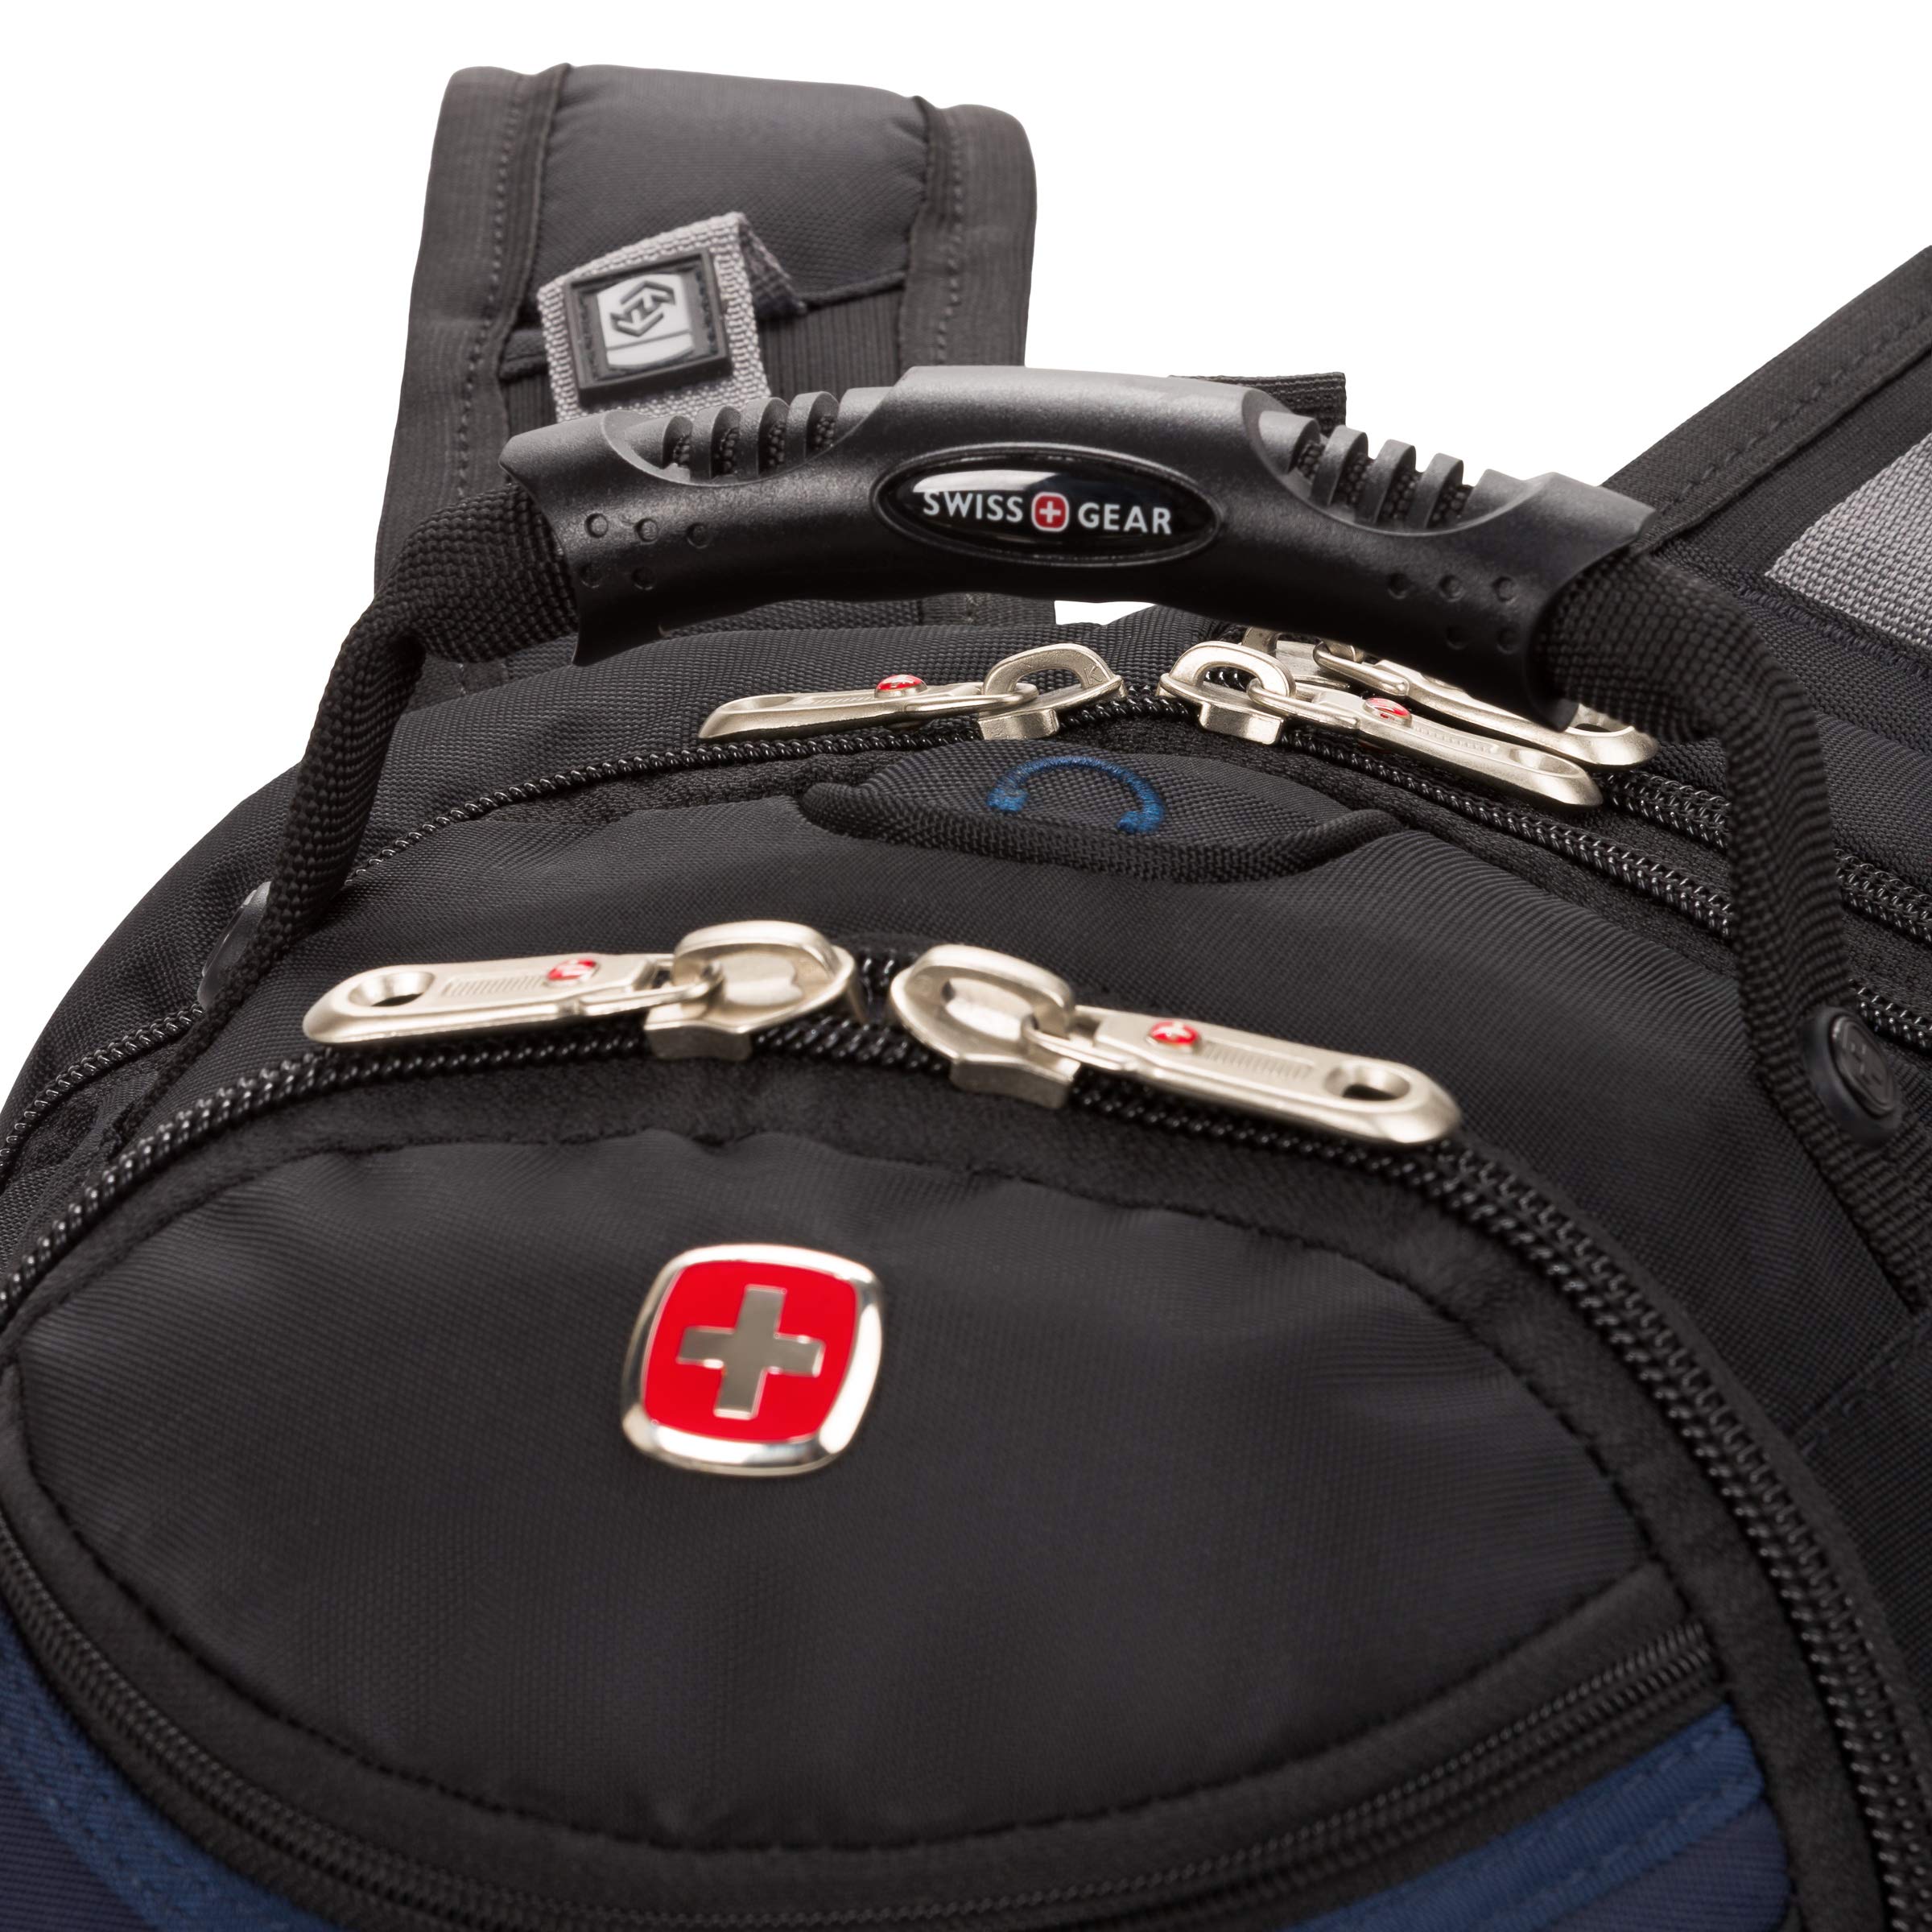 SwissGear 1900 Scansmart TSA 17-Inch Laptop Backpack, Blue/Black